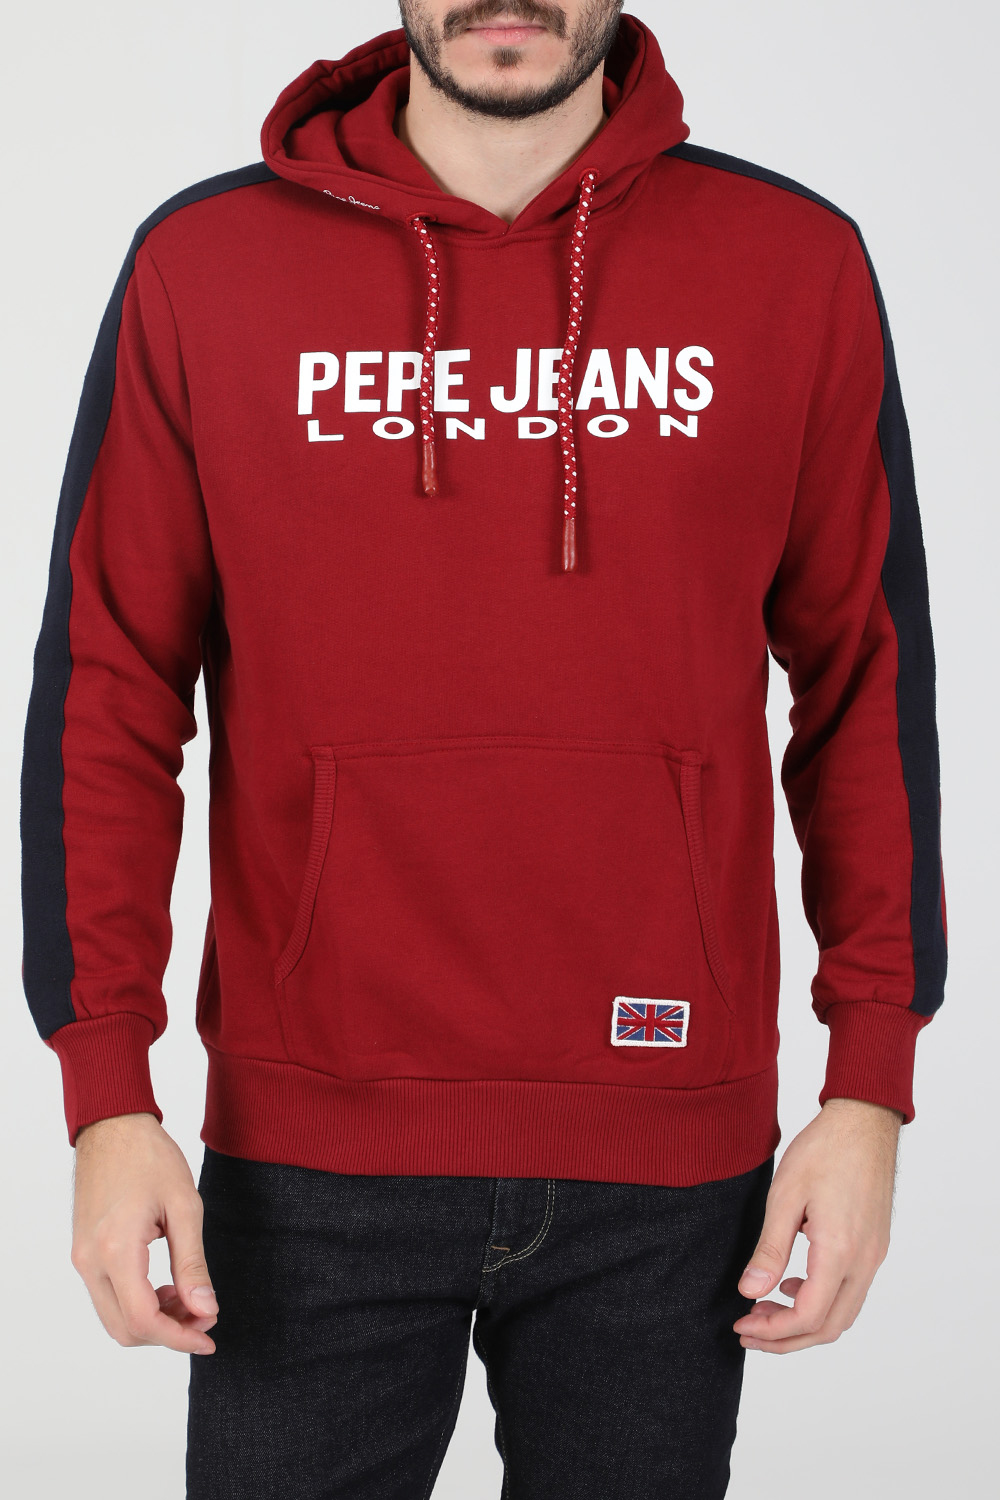 PEPE JEANS – Ανδρικη φουτερ μπλουζα PEPE JEANS ANDRE κοκκινη